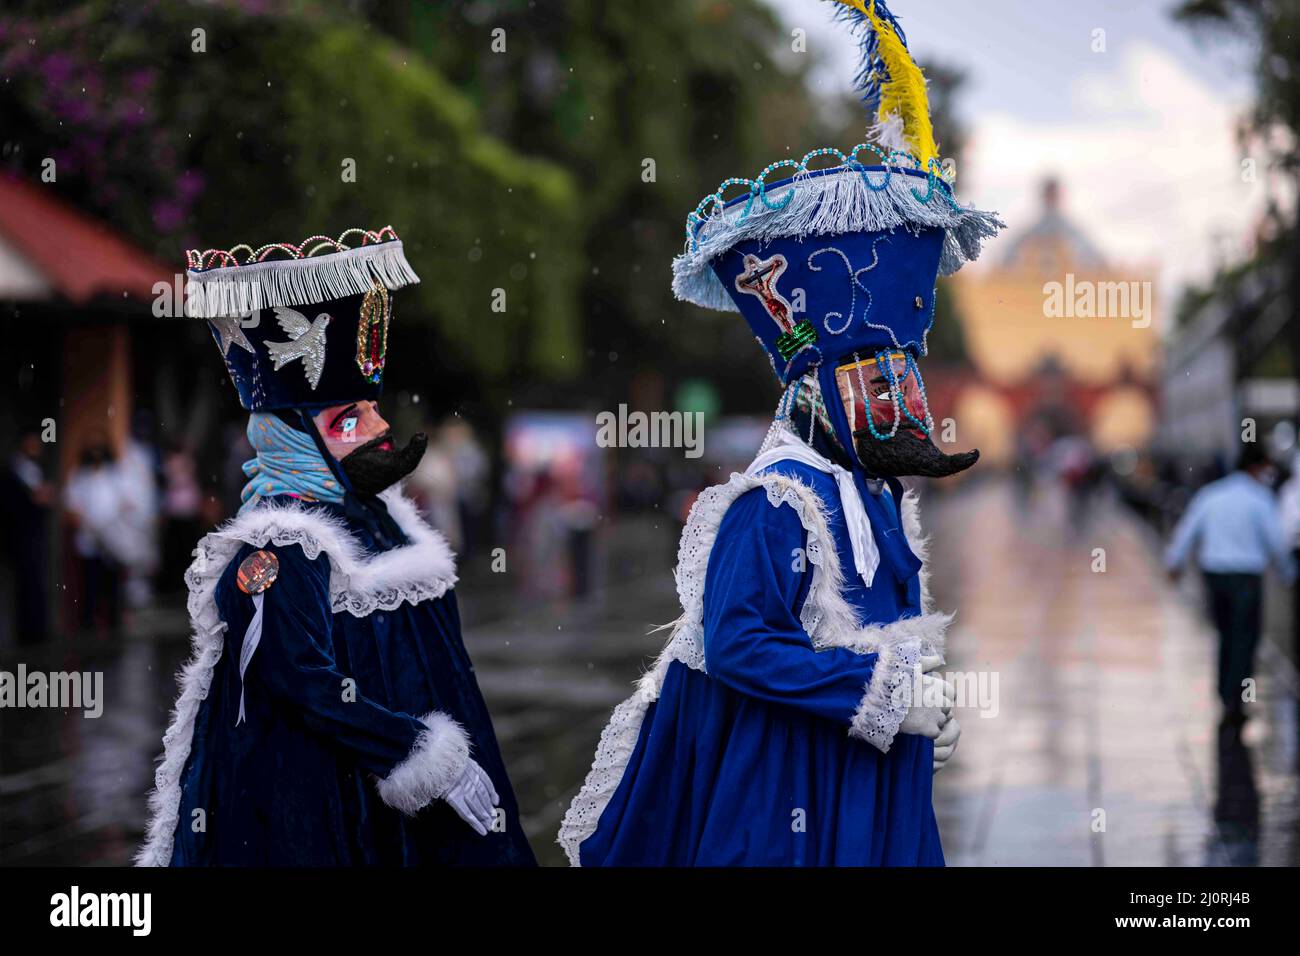 Ciudad de México, México. 18th Mar, 2022. La gente viste trajes participa en el Carnaval de Xochimilco 2022. (Imagen de crédito: © David de la Paz/ZUMA Press Wire Service) Foto de stock